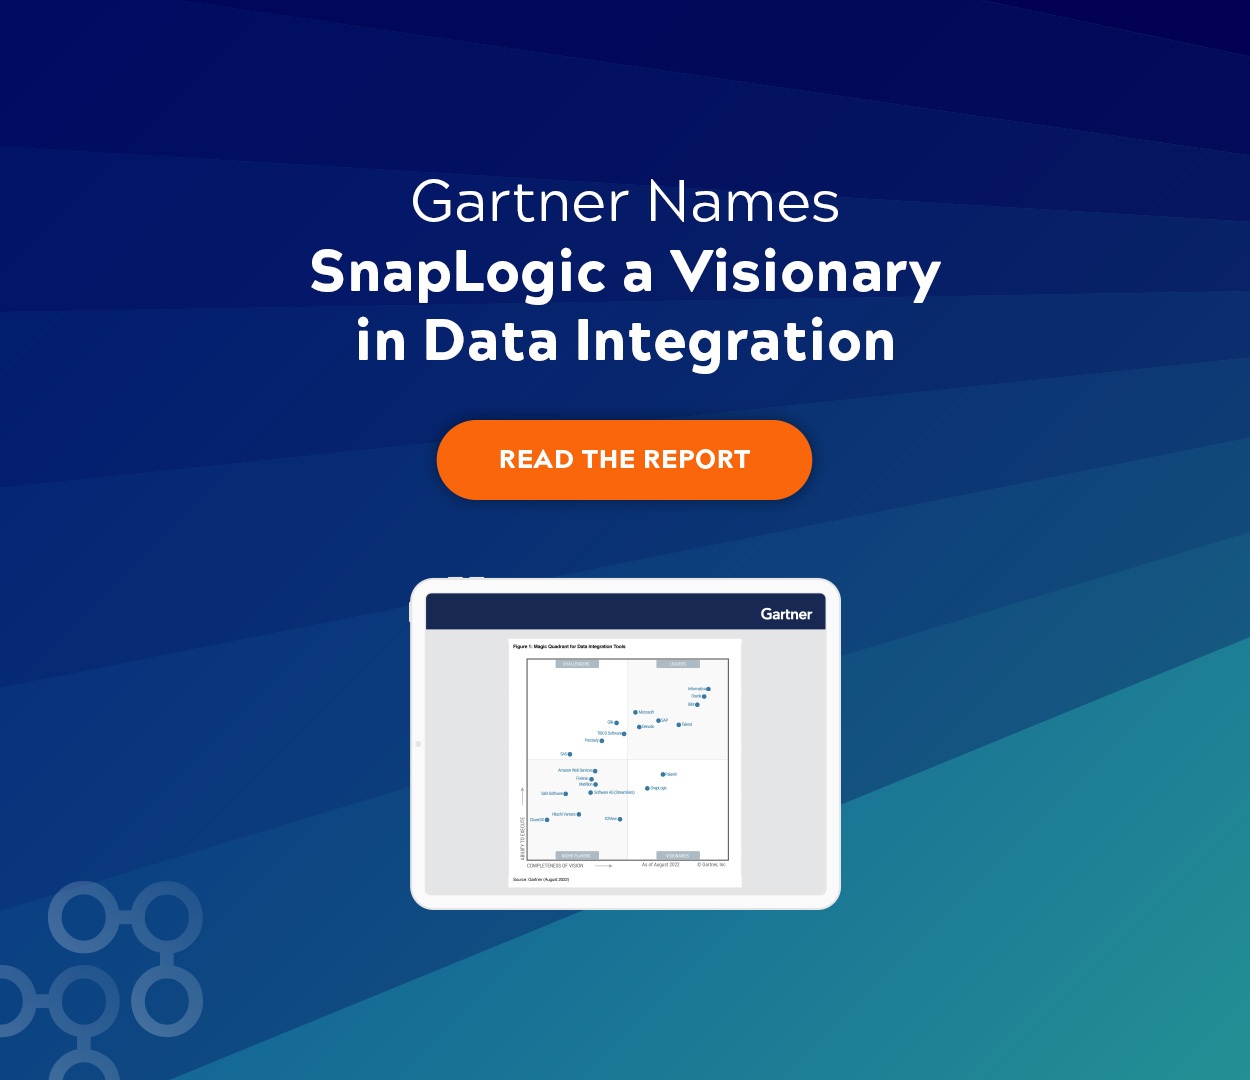 Gartner Visionary in Data Integration